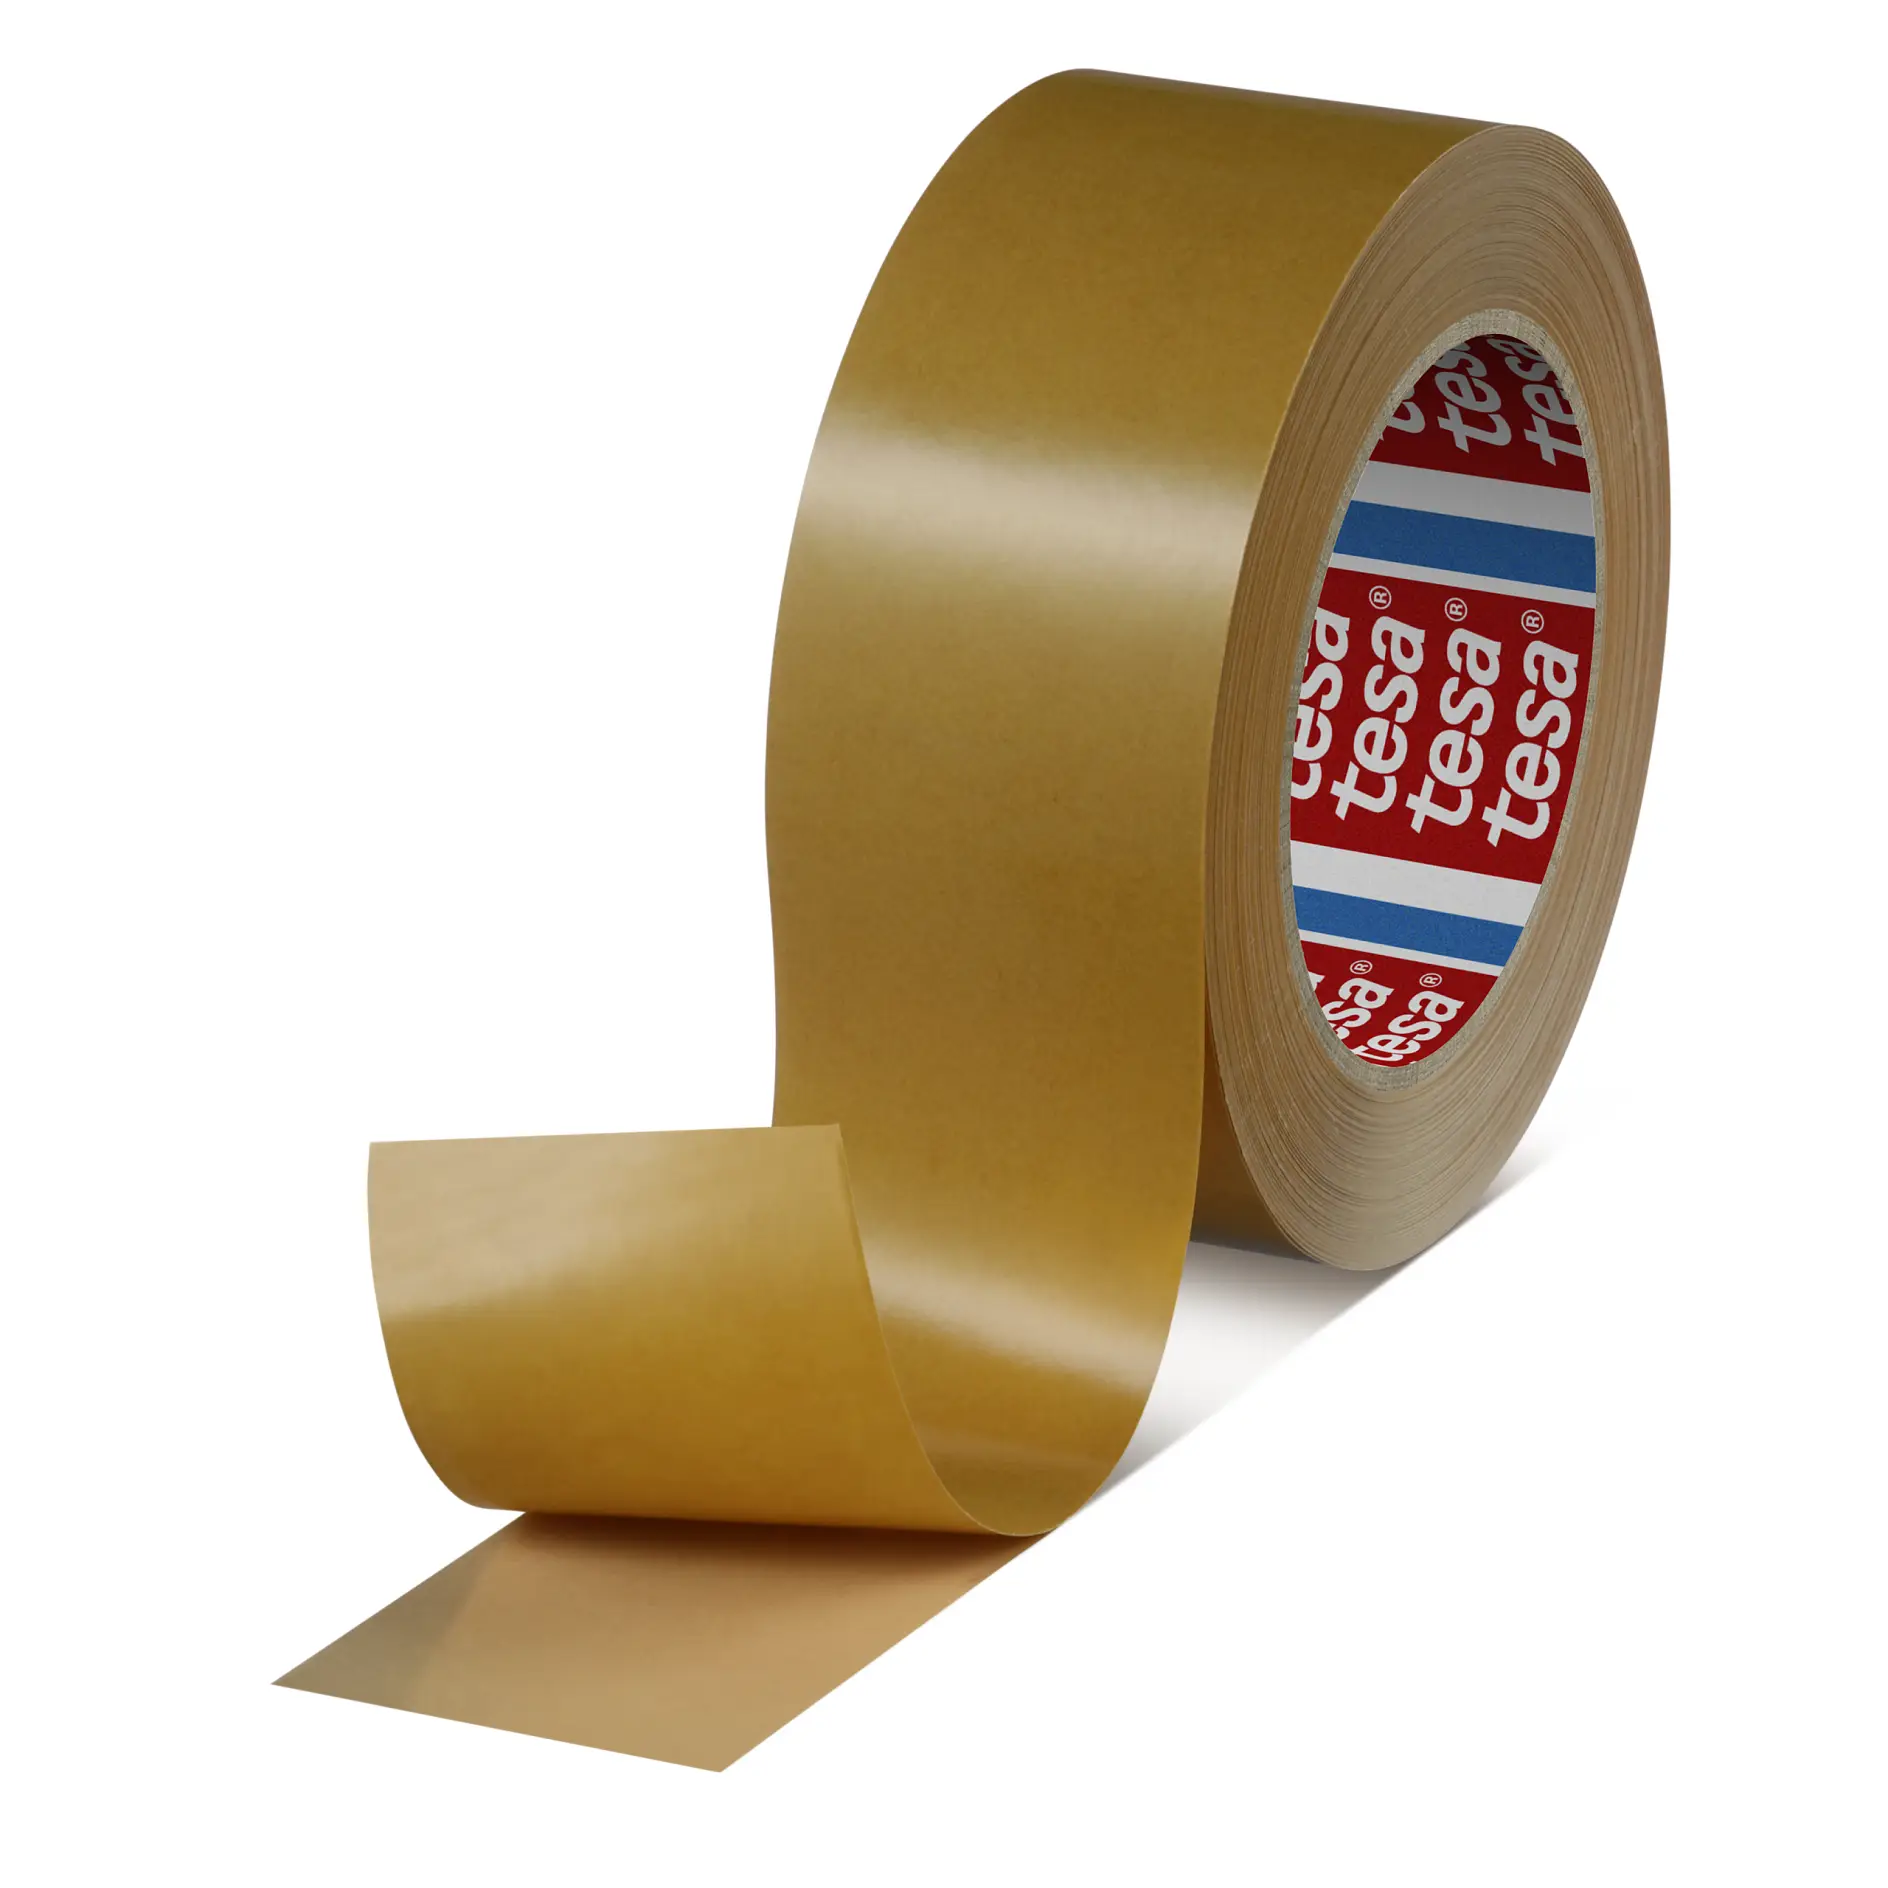 tesa-haf-8410-60-amber-reactive-mounting-tape-brown-084100001400-pr